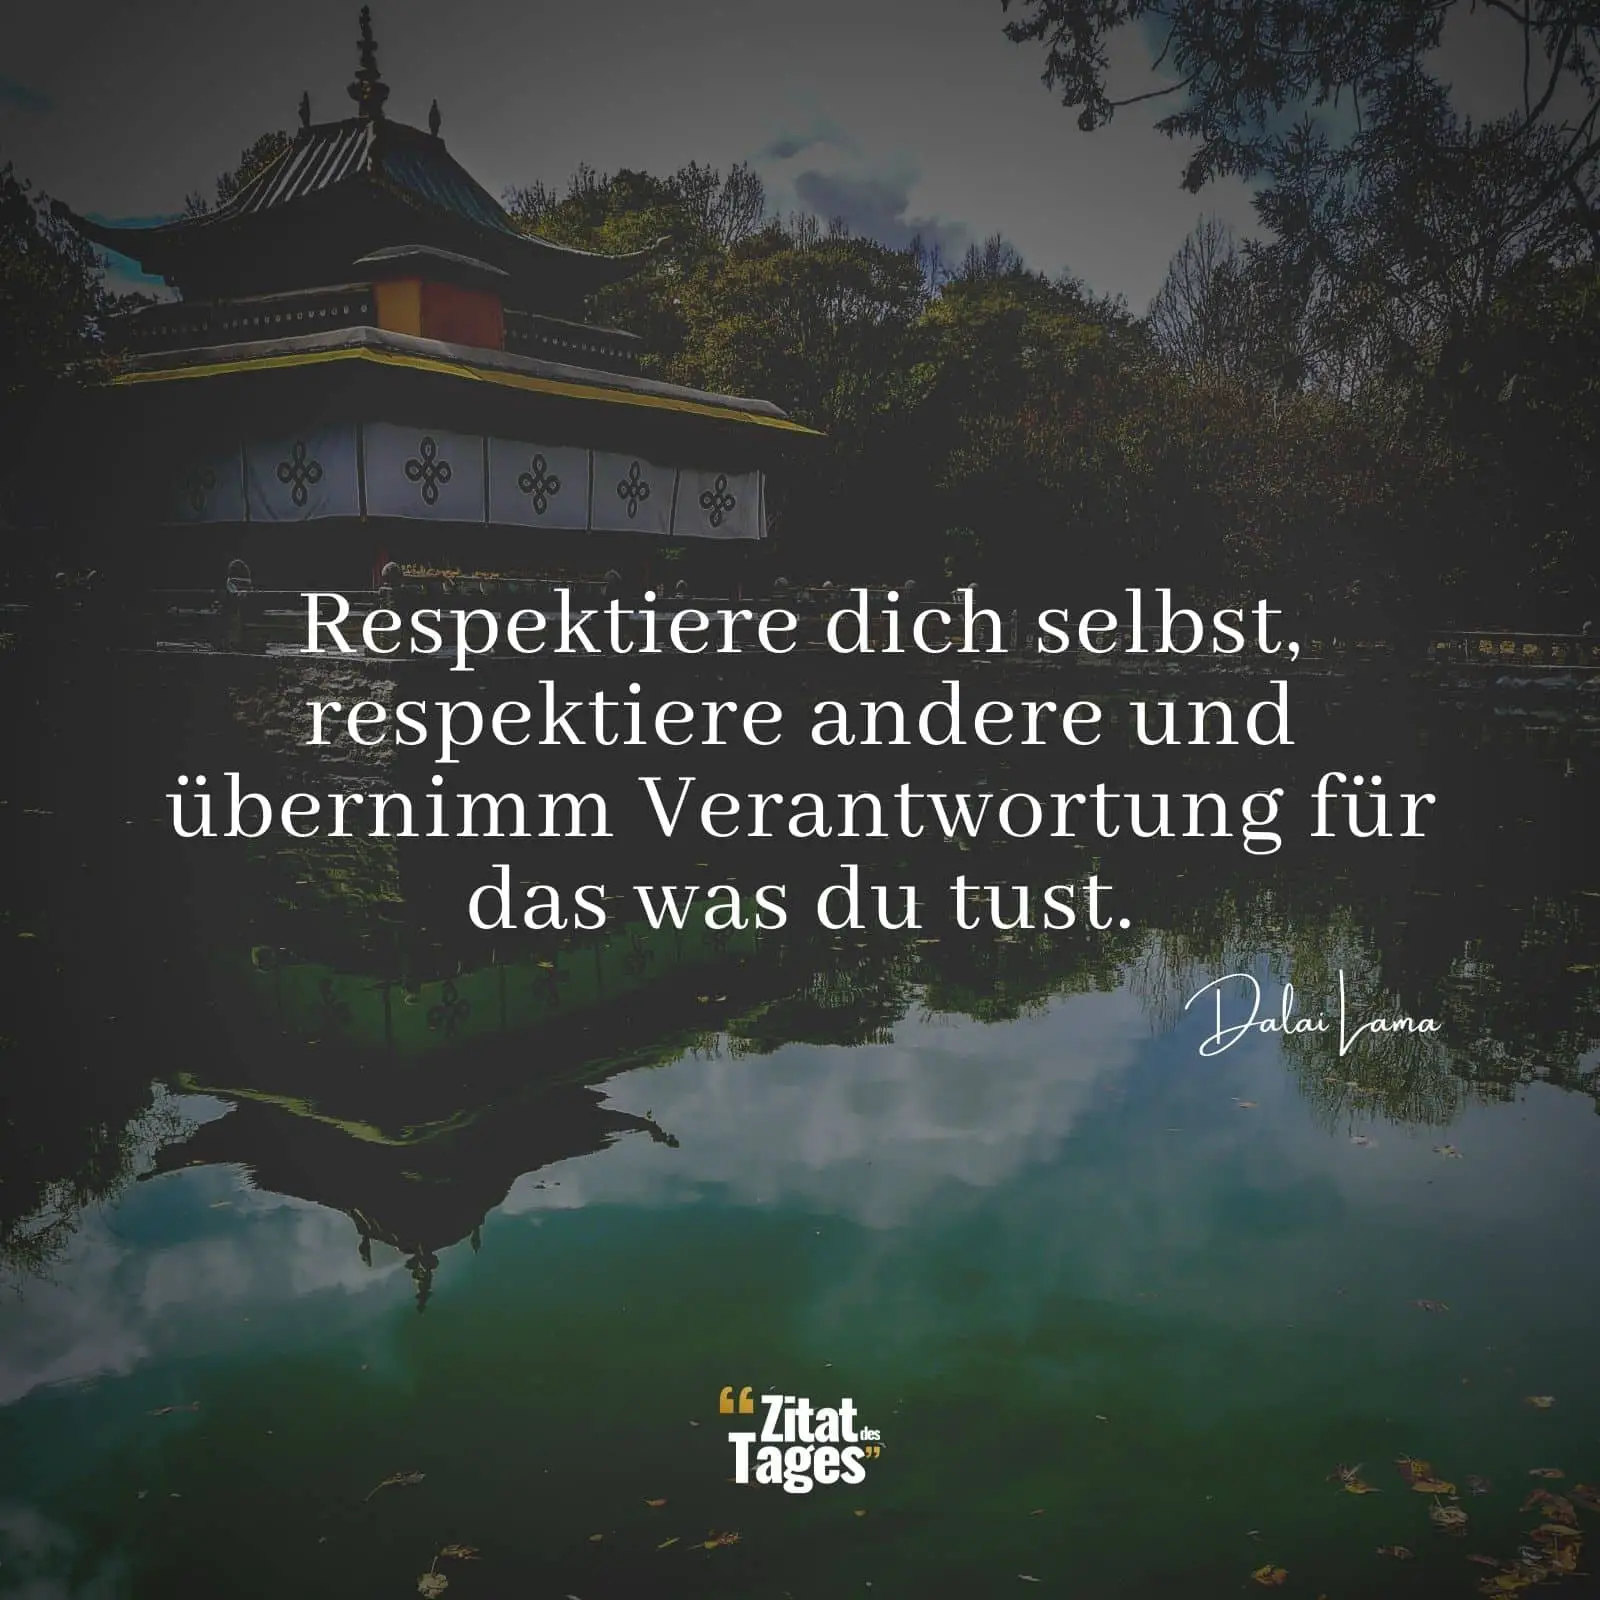 Respektiere dich selbst, respektiere andere und übernimm Verantwortung für das was du tust. - Dalai Lama